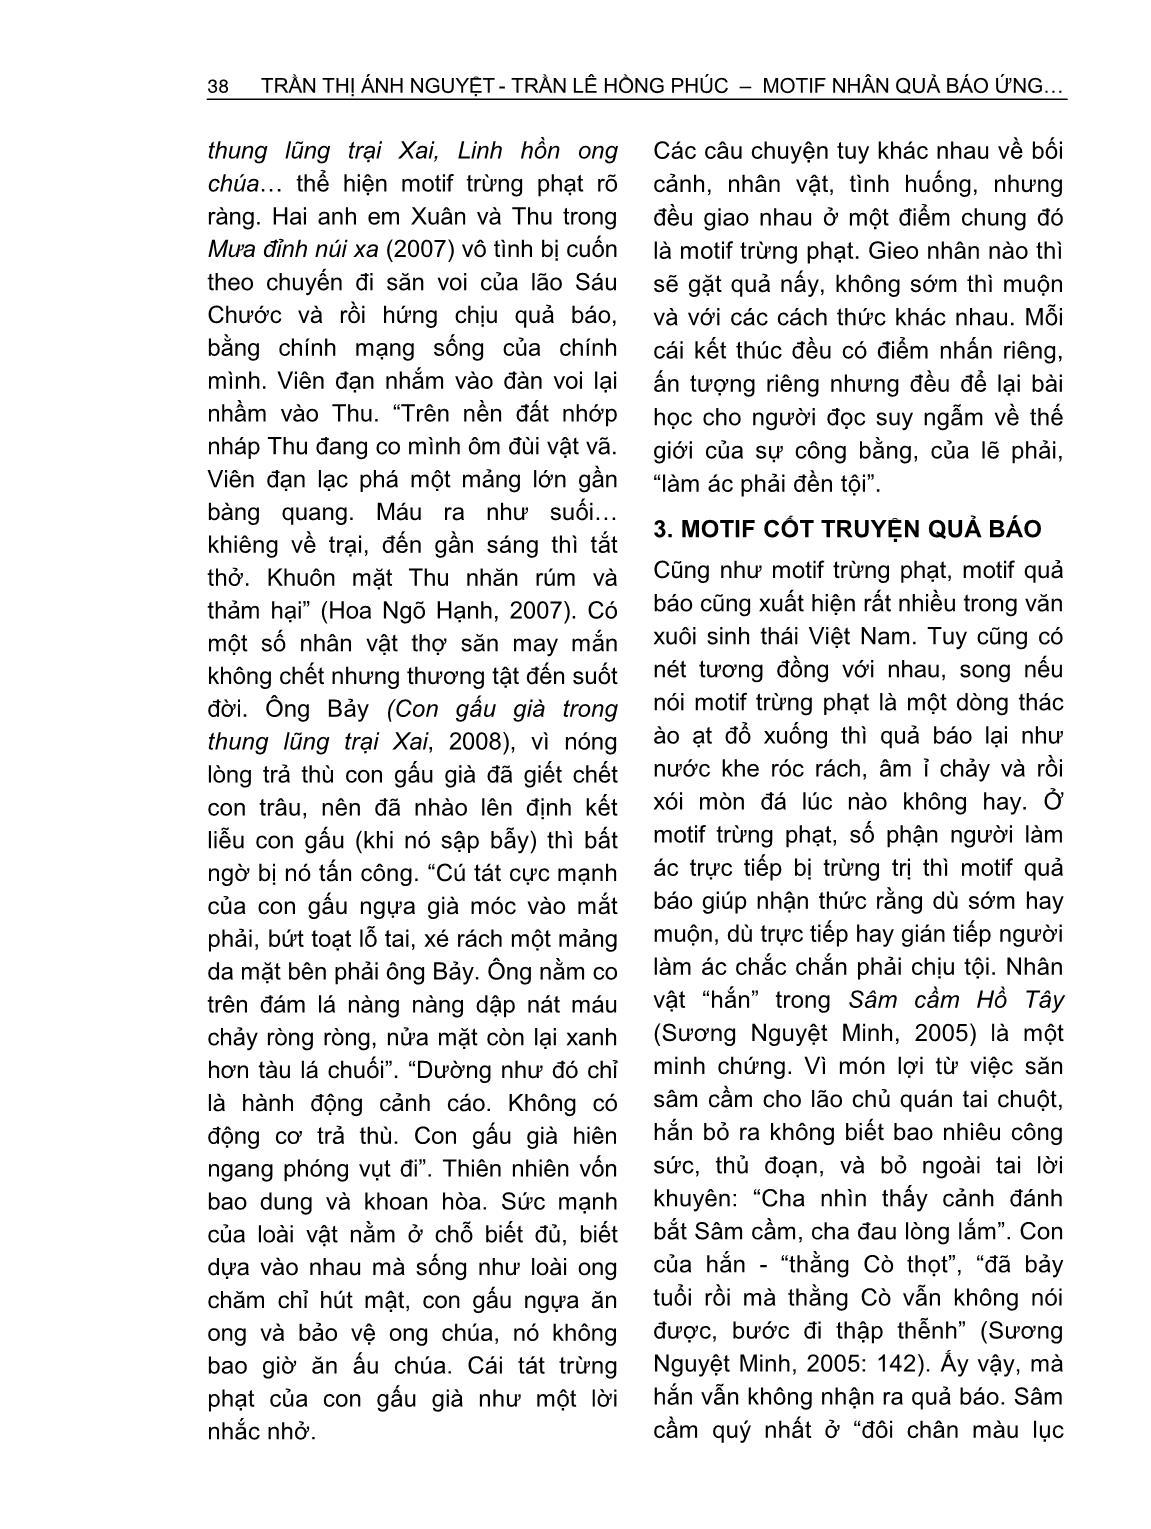 Motif nhân quả báo ứng trong văn xuôi sinh thái Việt Nam đương đại từ góc nhìn Phật Giáo trang 6